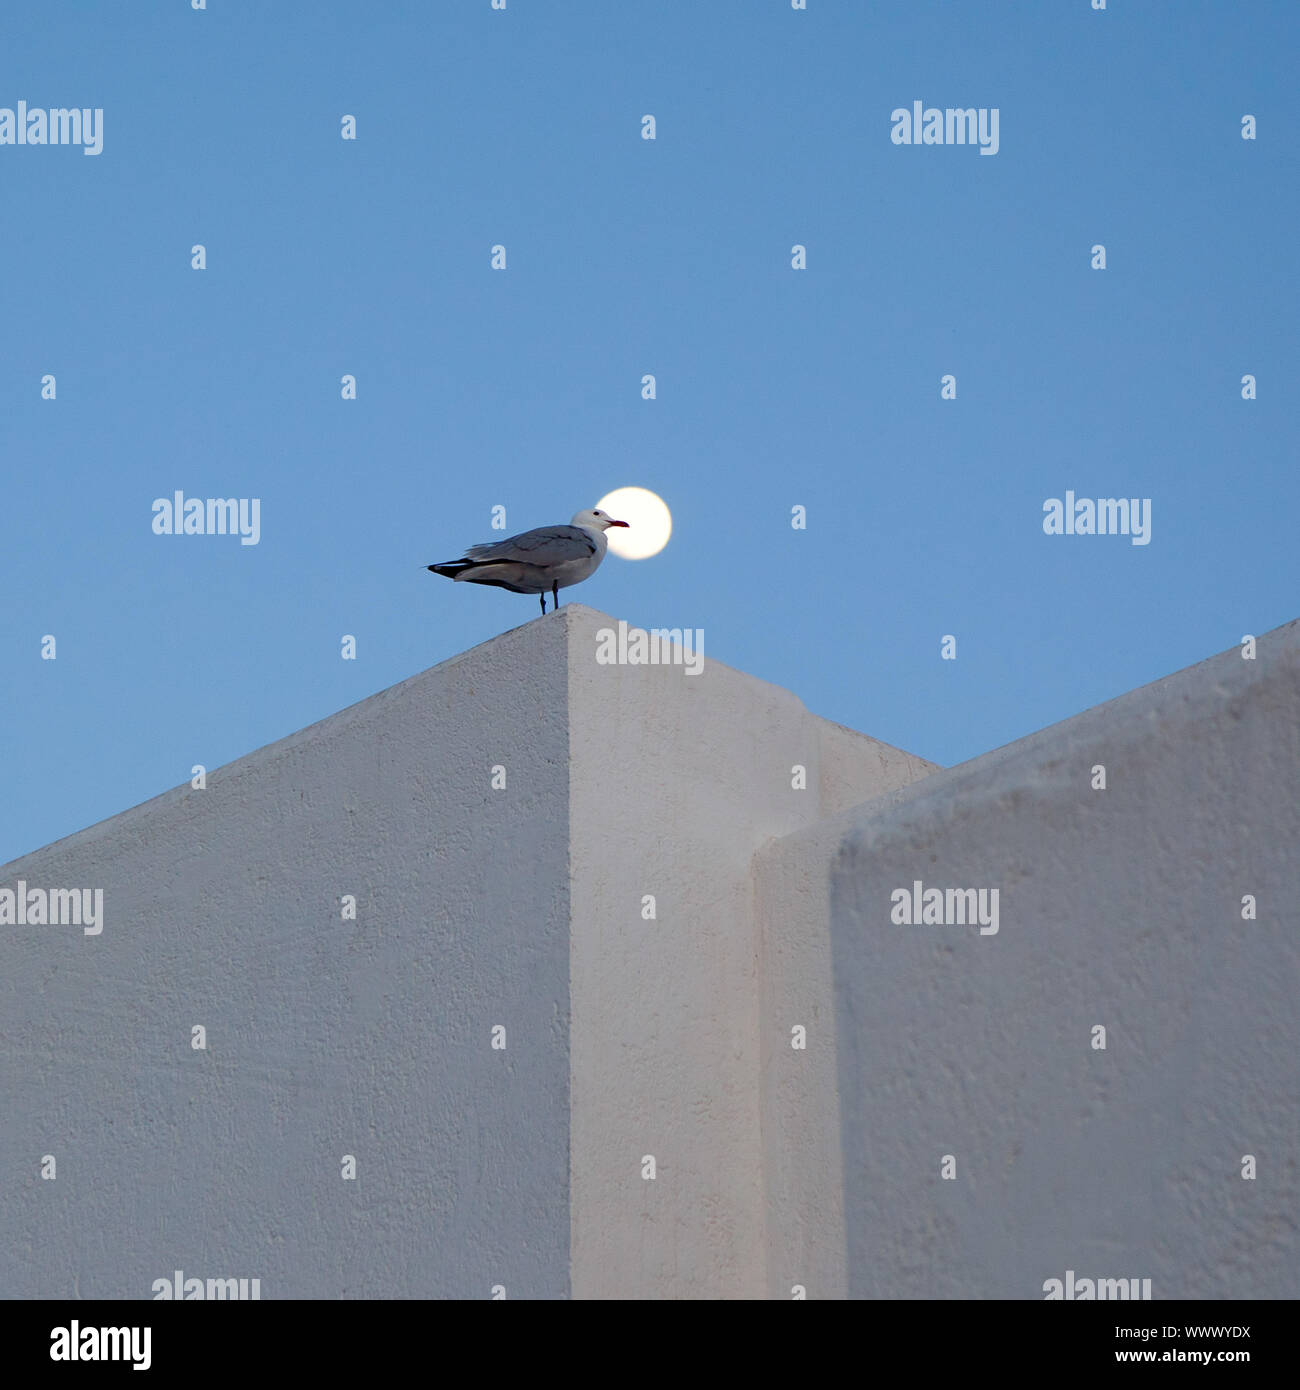 Mond und Möwe in einem mediterranen oben auf einem weissen Haus Stockfoto